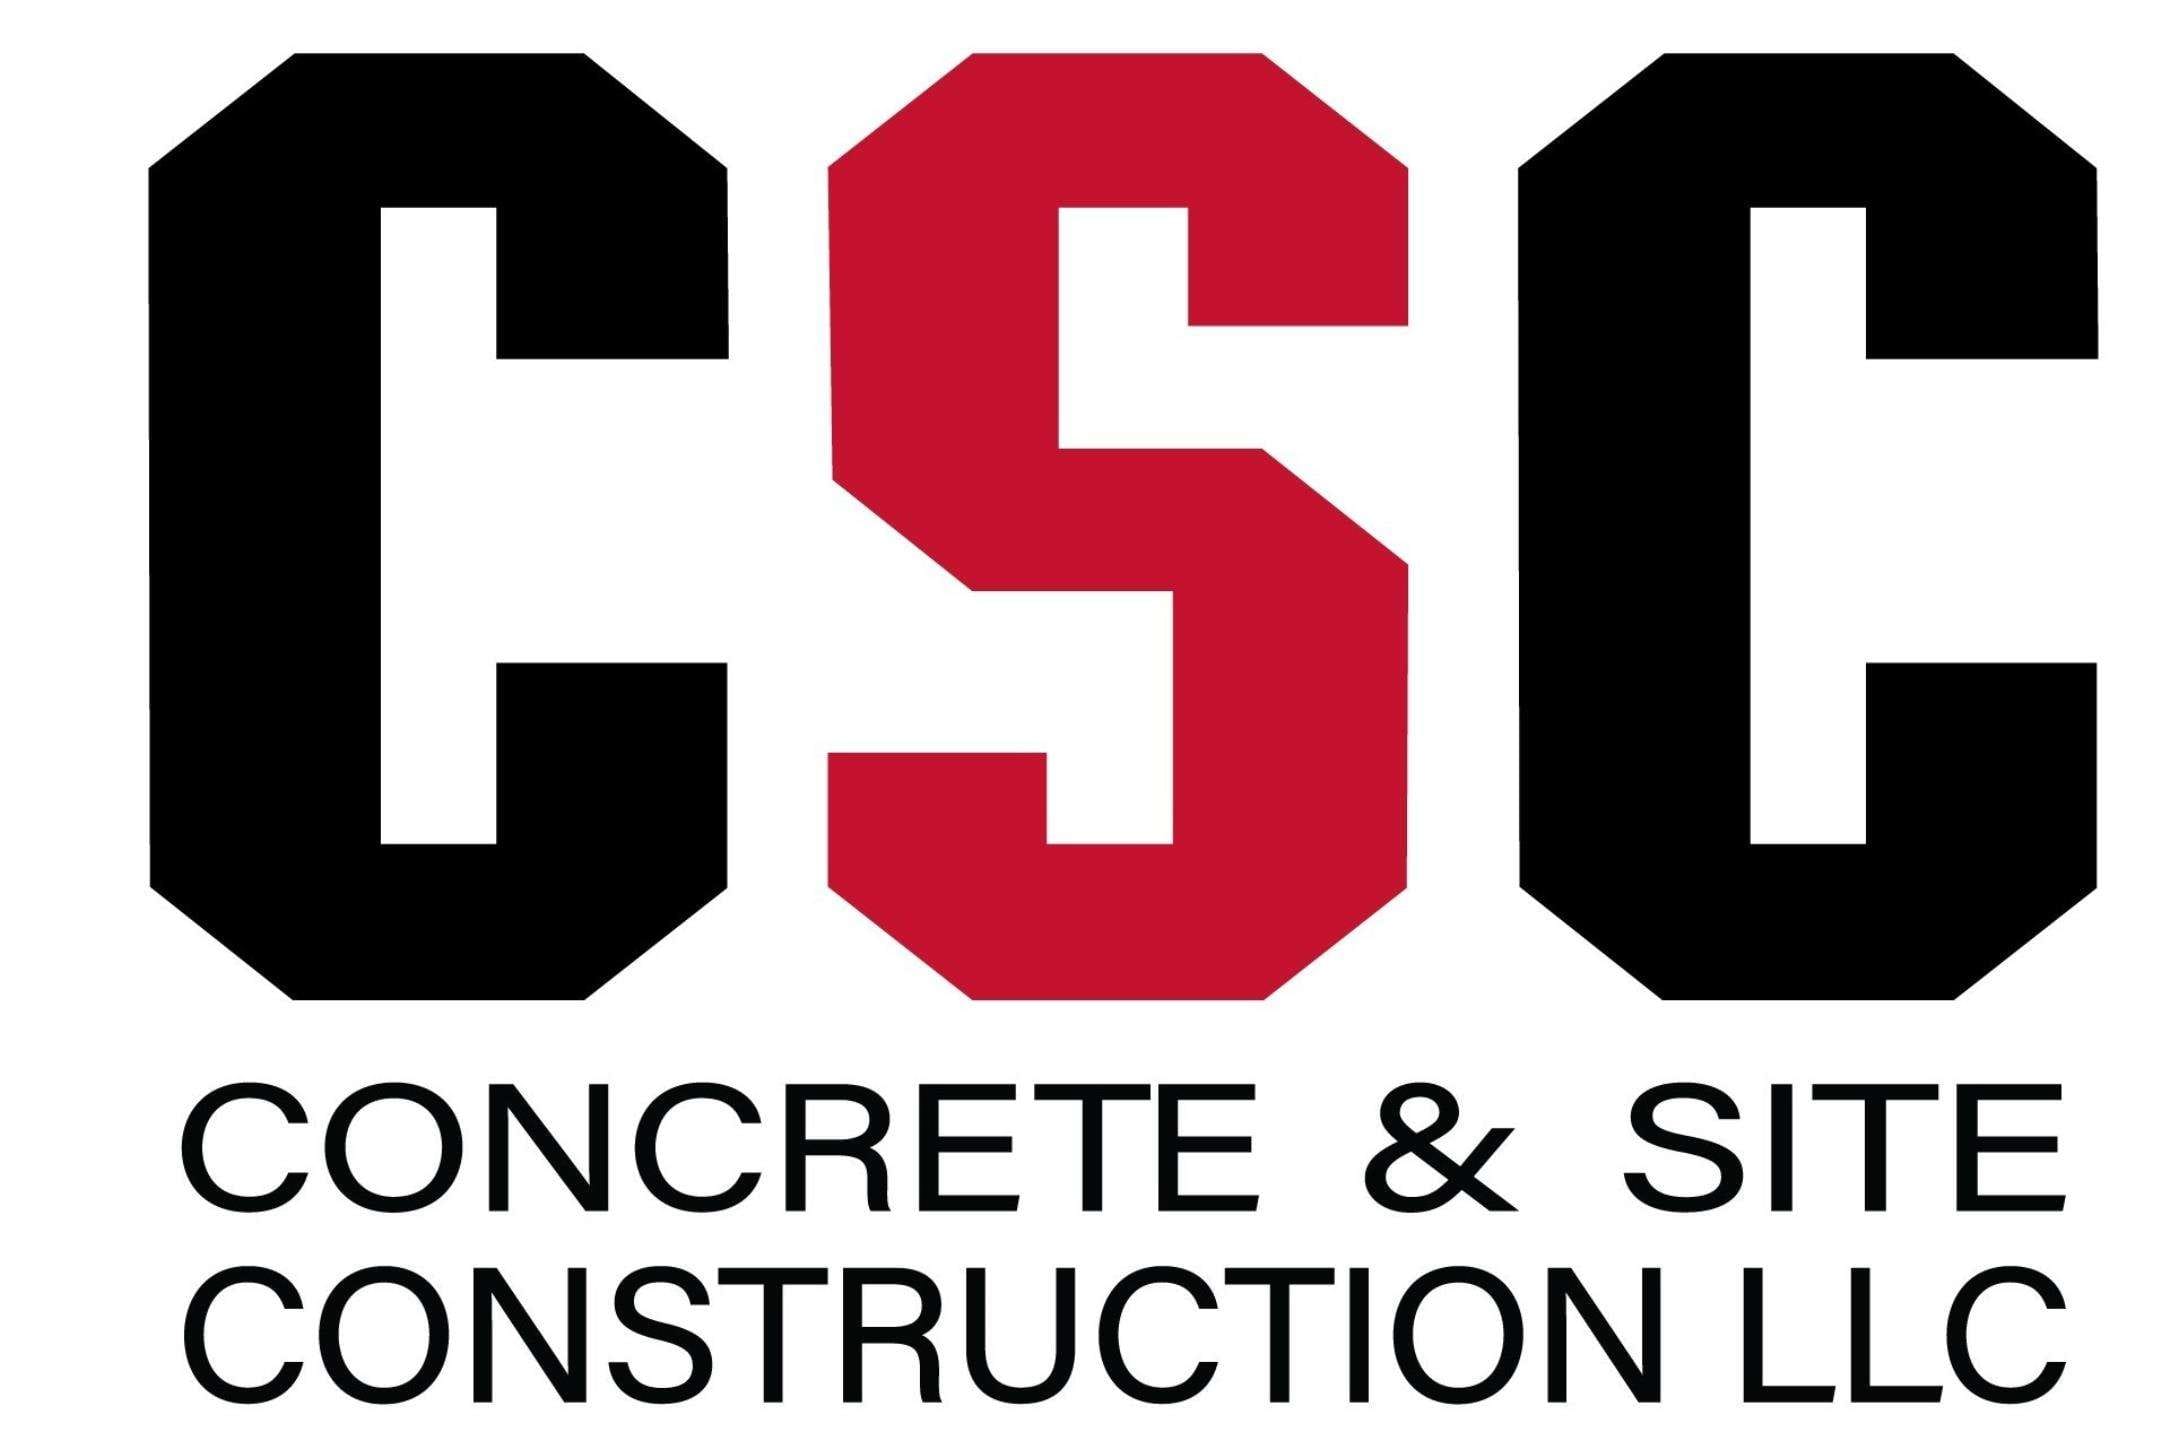 Concrete & Site Construction, LLC | Better Business Bureau® Profile